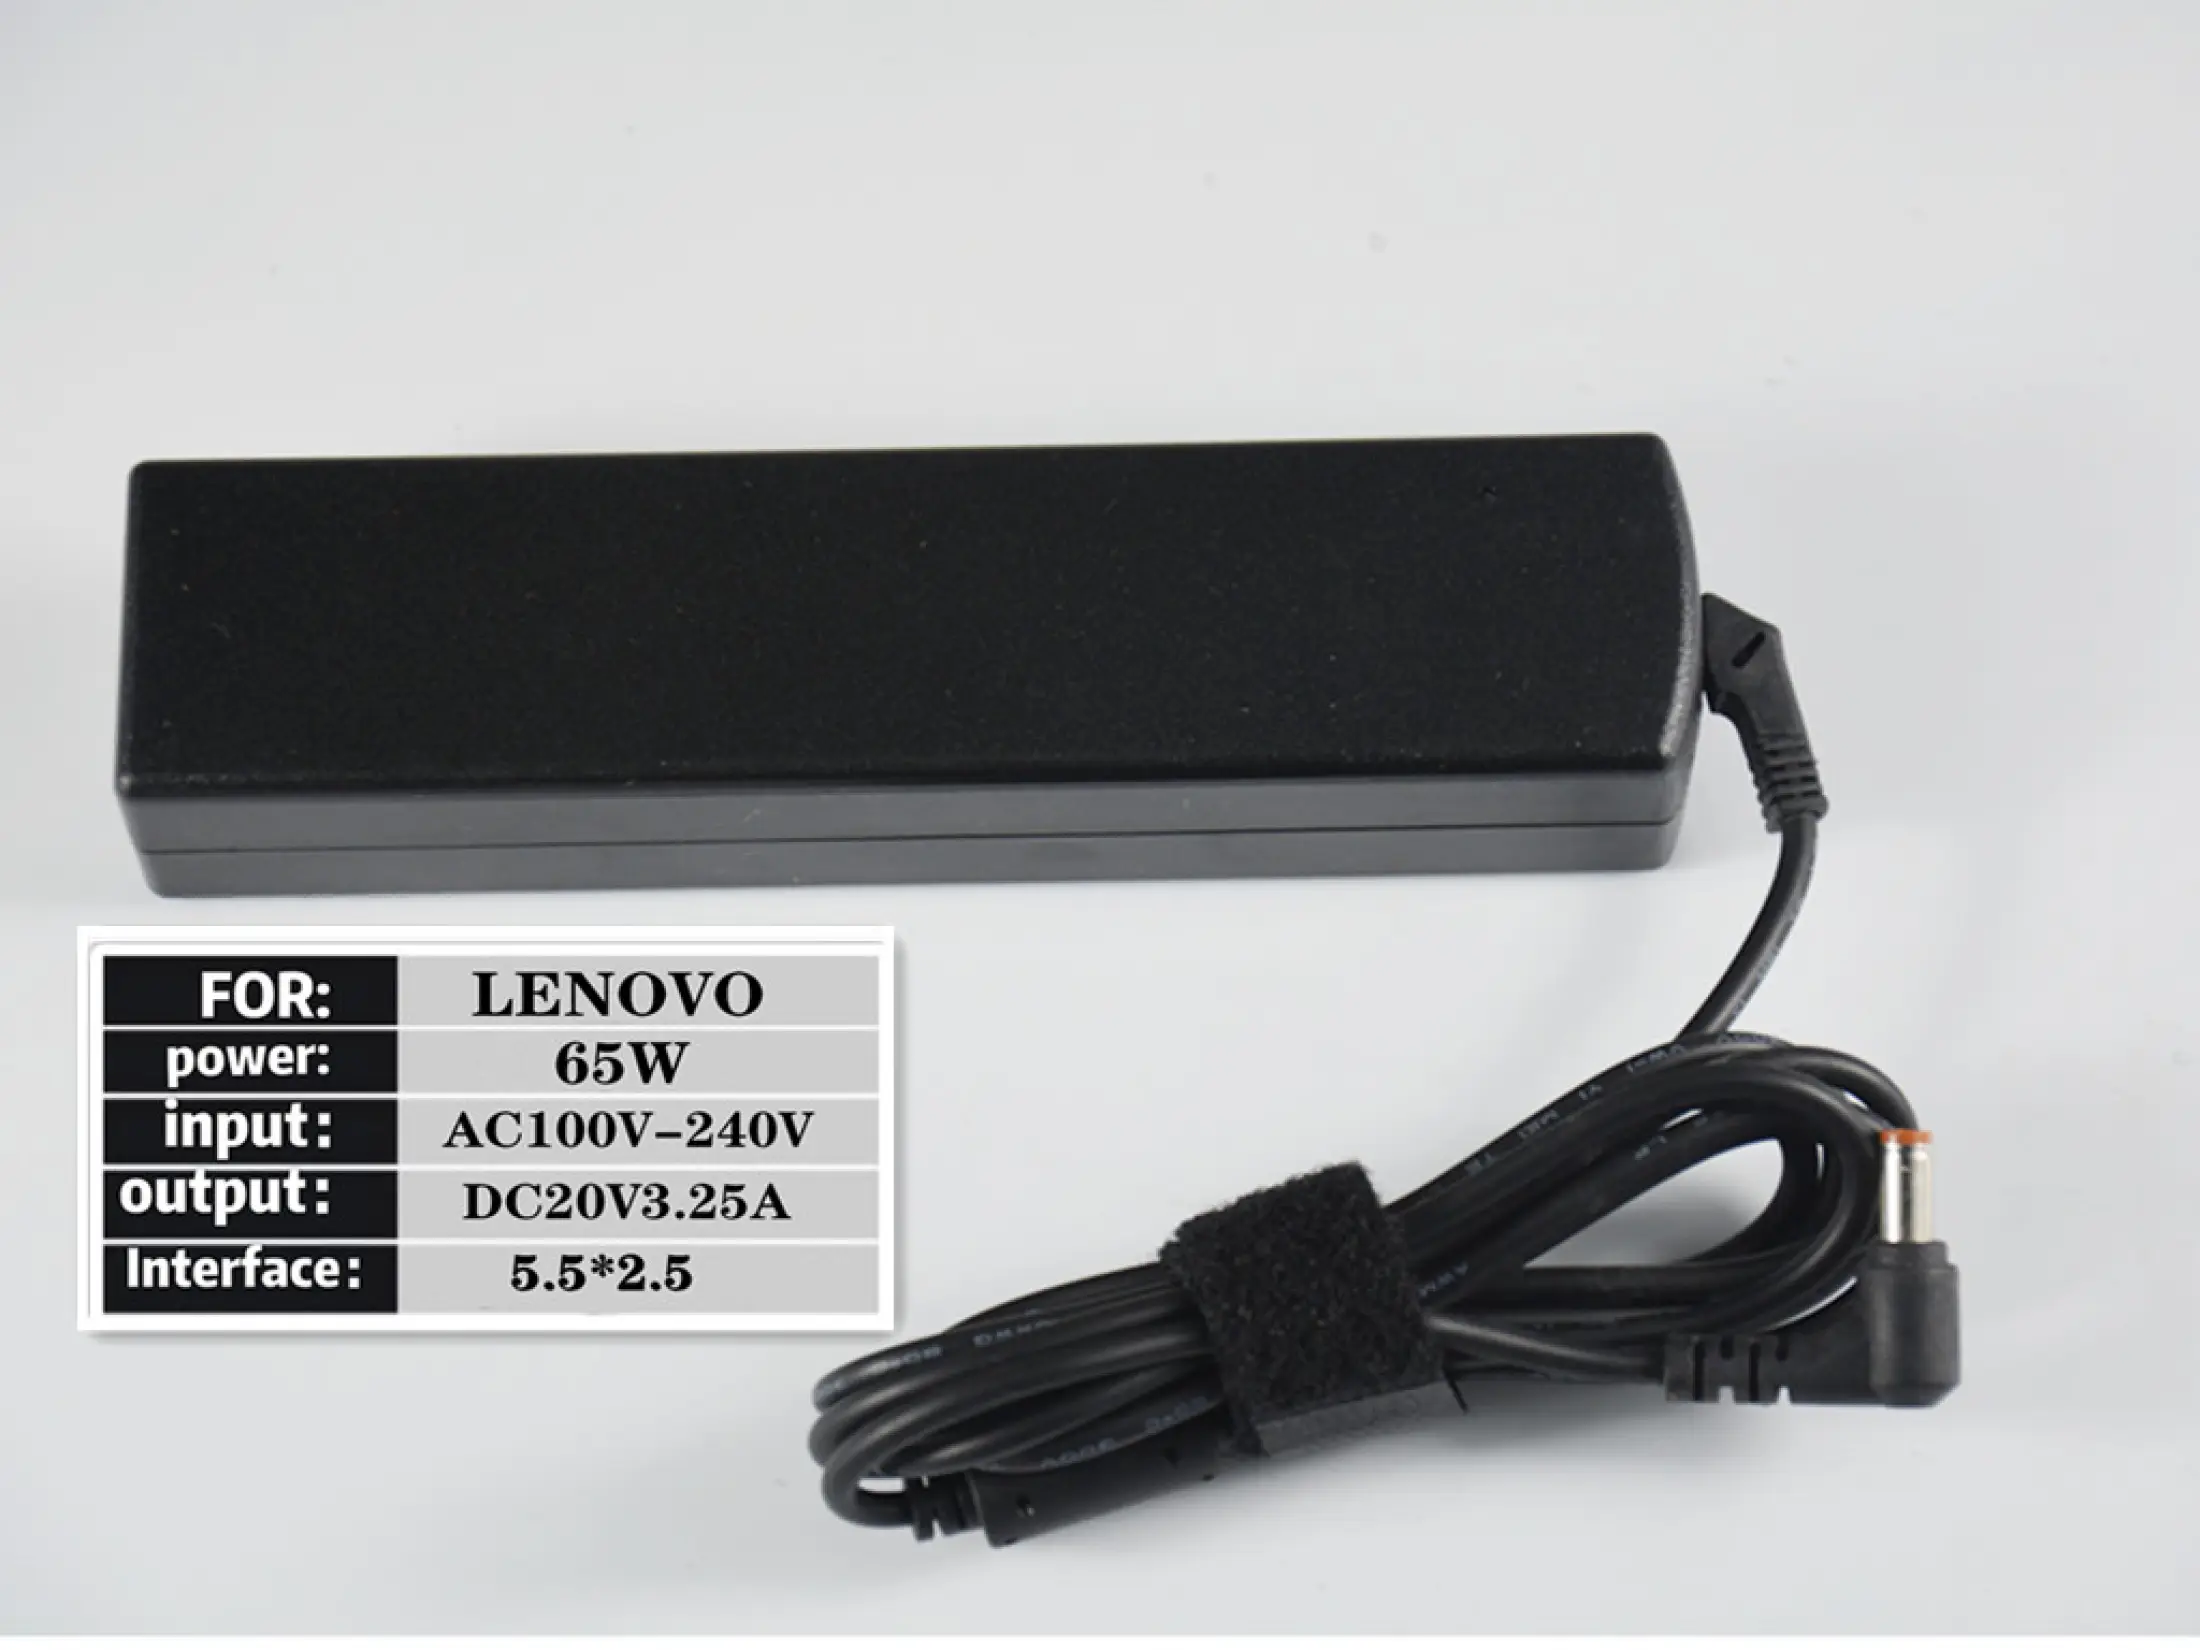 รูปภาพของ IT Adapter Notebook อะแดปเตอร์ For LENOVO 20V 3.25A หัว 5.5*2.5 (สีดำ)